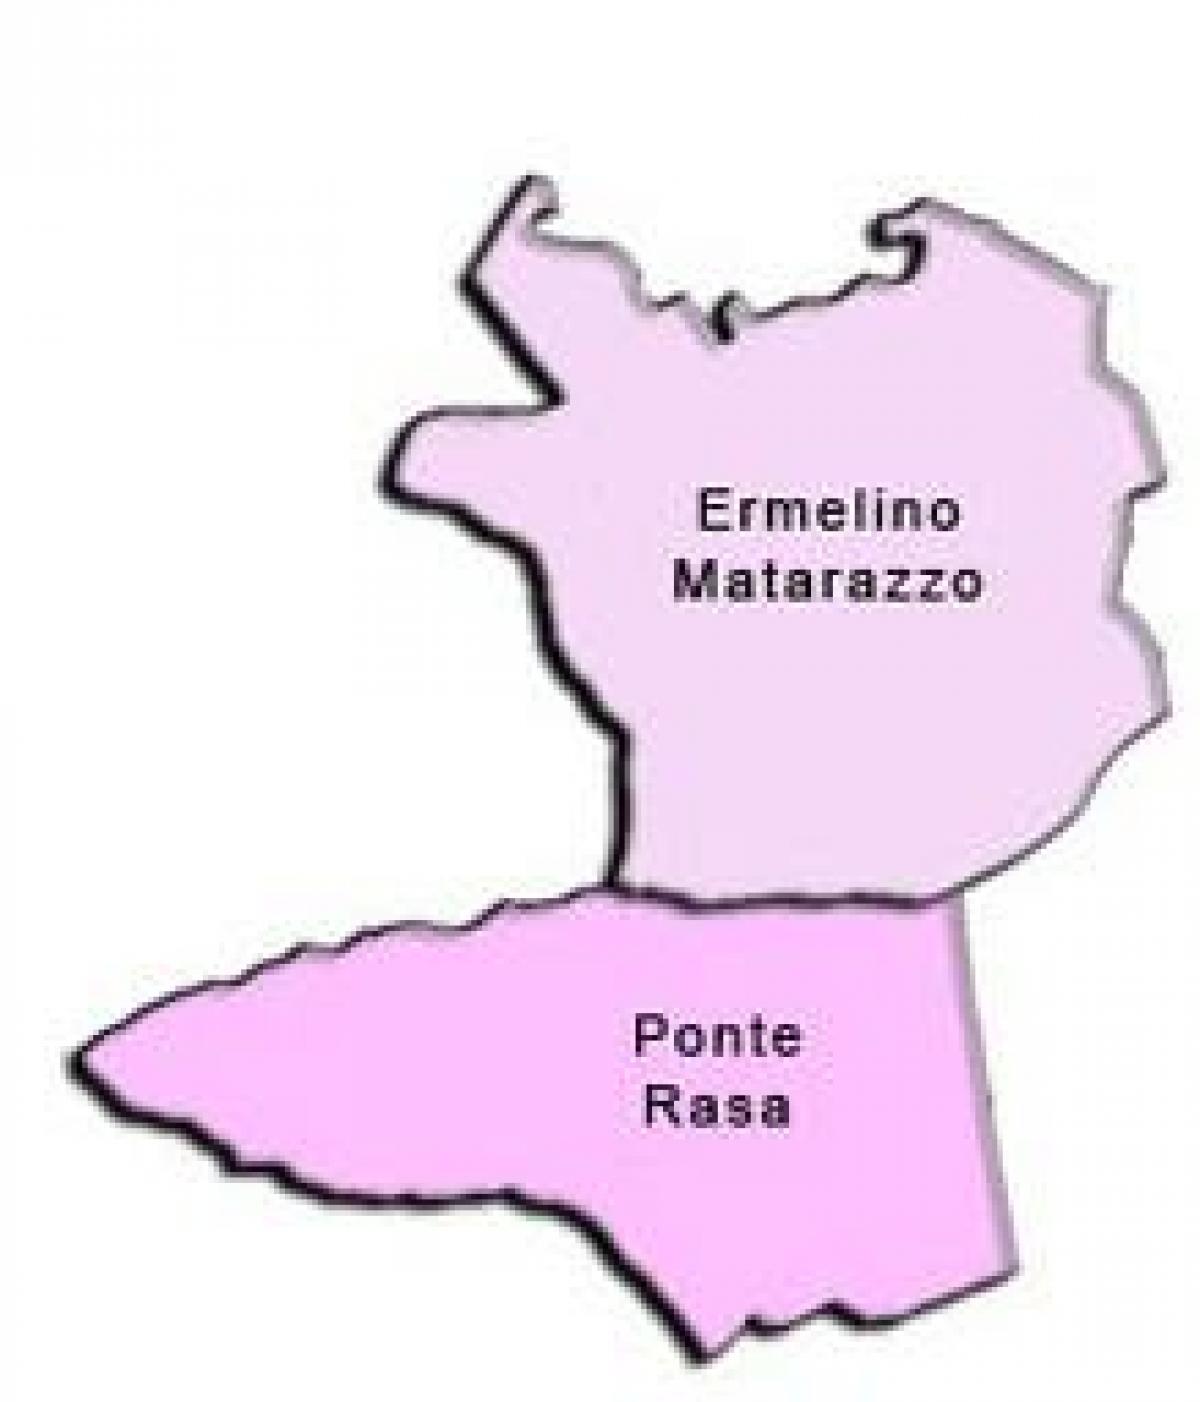 Mapa de Ermelino Matarazzo sub-prefectura